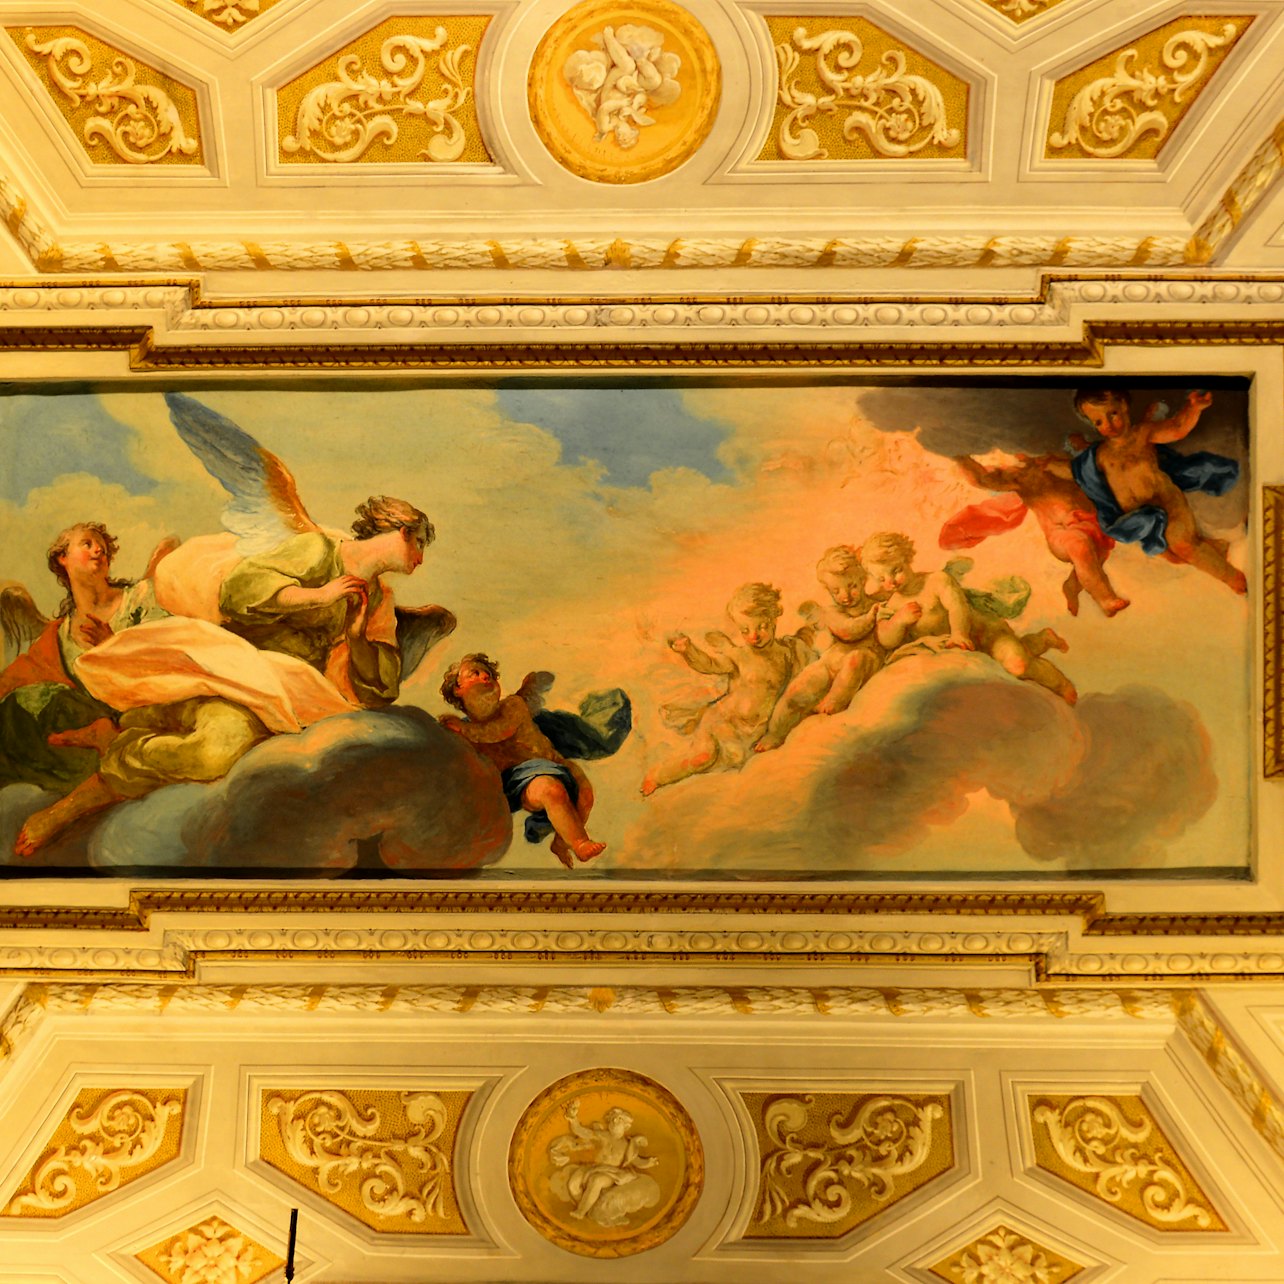 Galeria Borghese: Entrada reservada - Acomodações em Roma